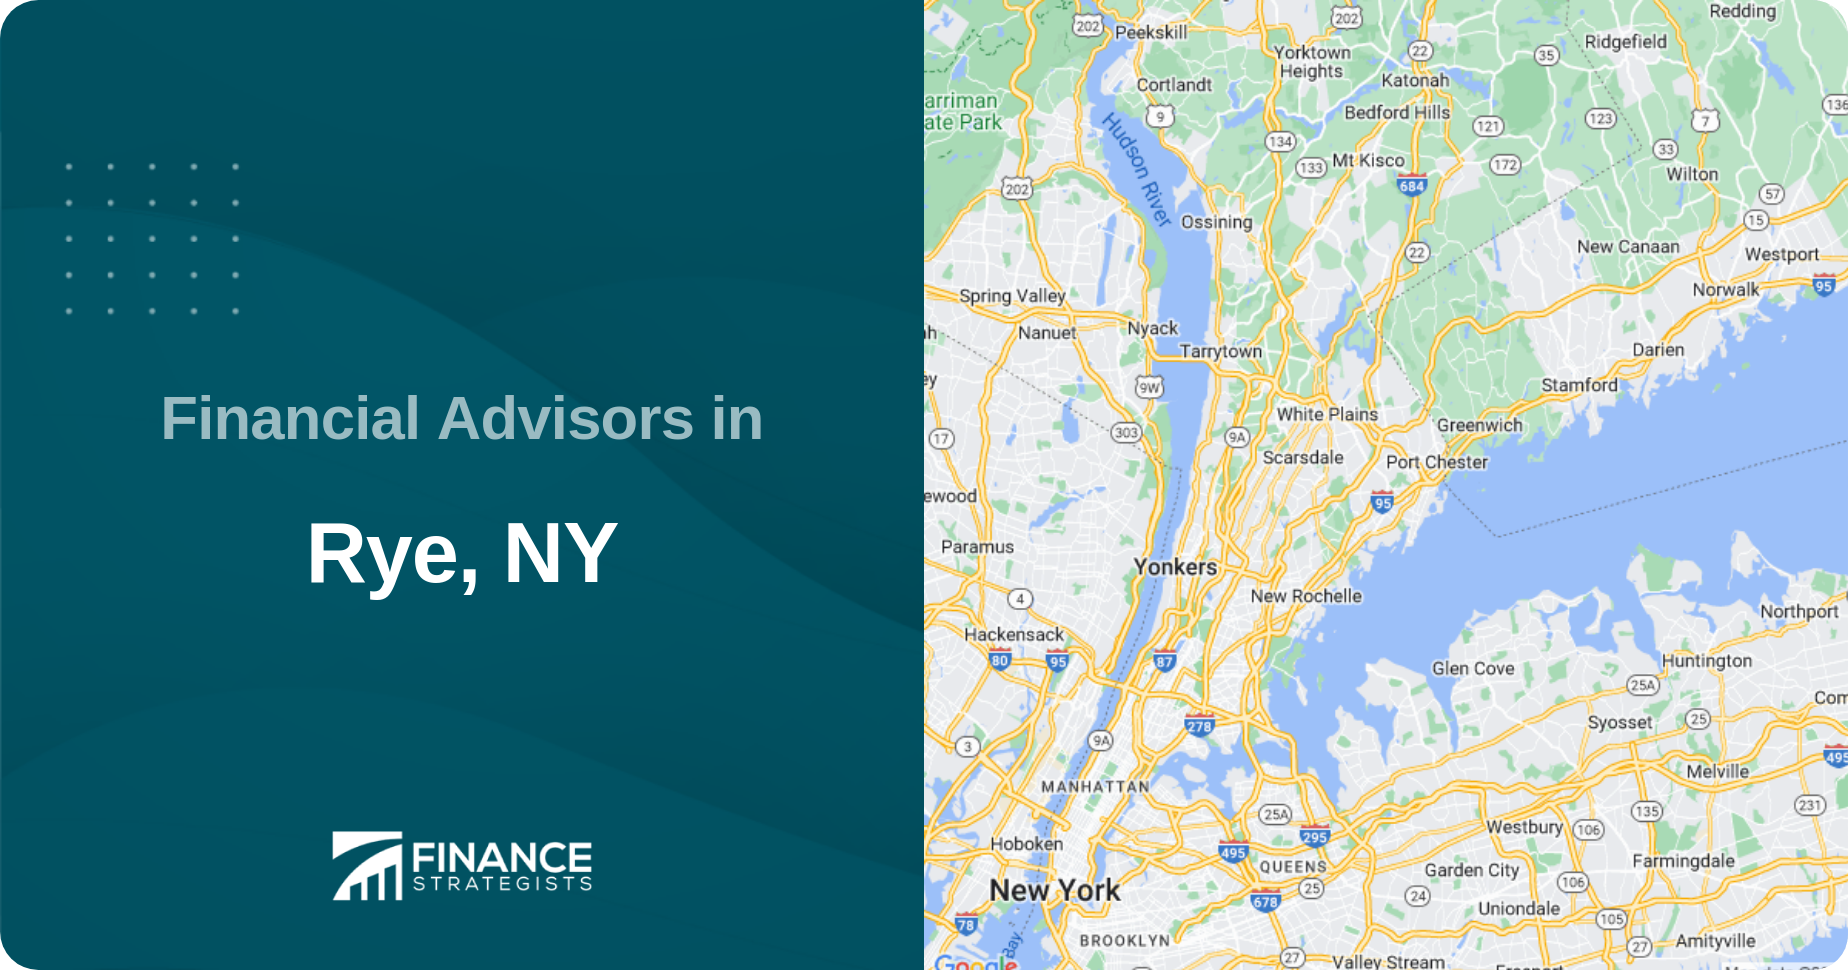 Financial Advisors in Rye, NY